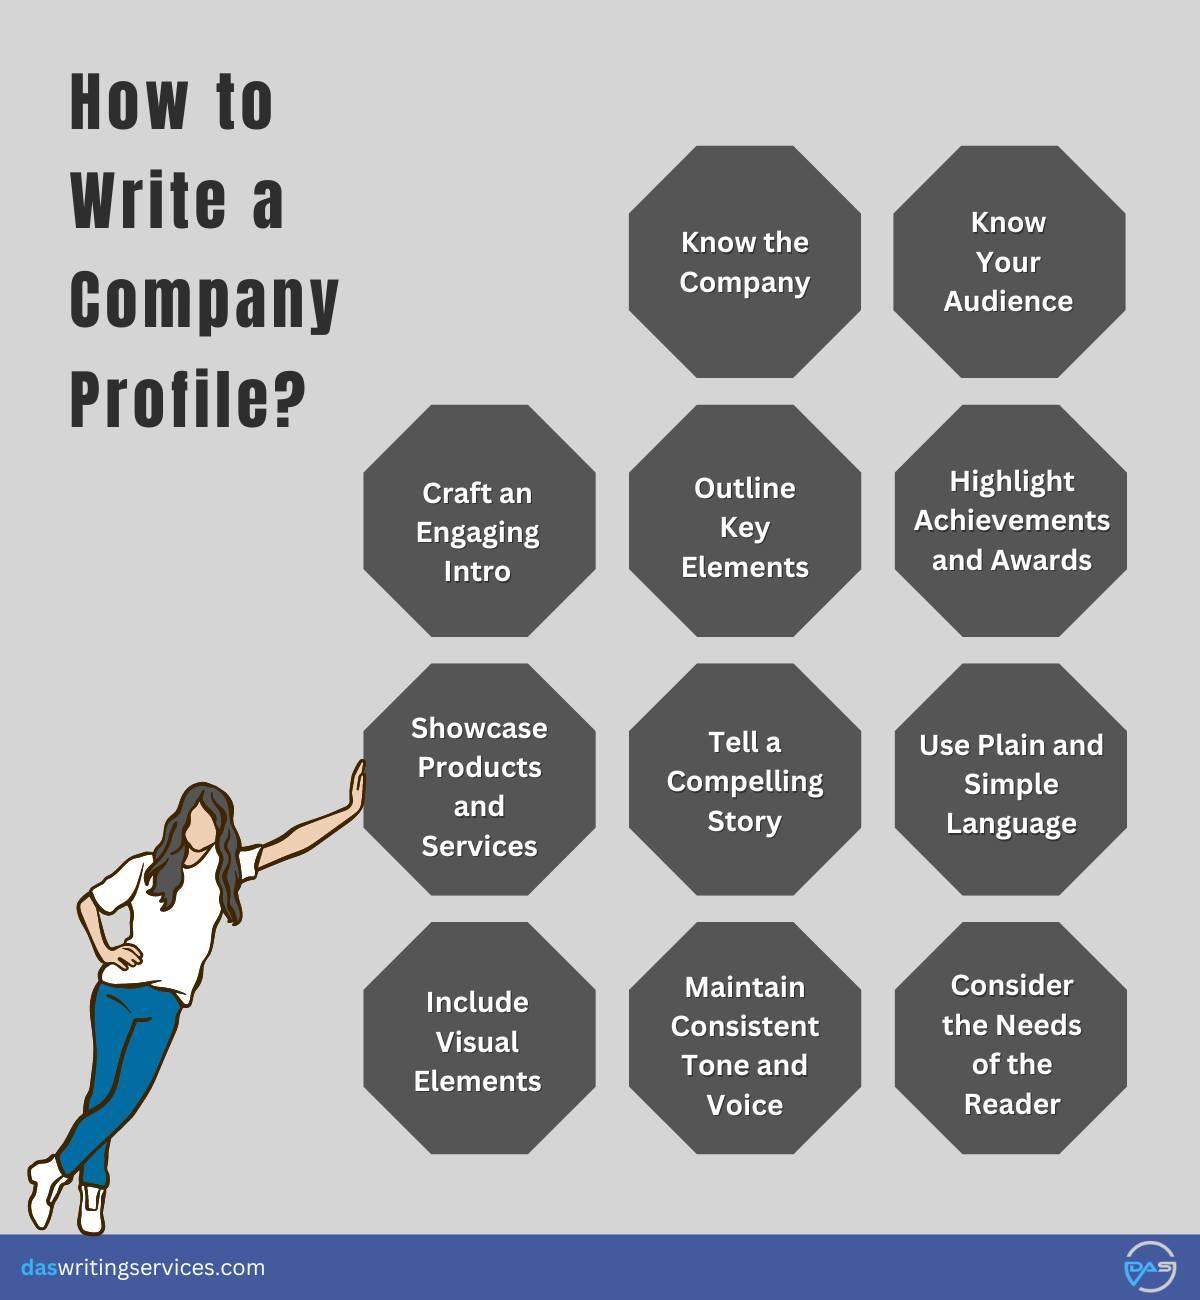 How to Write a Company Profile? 